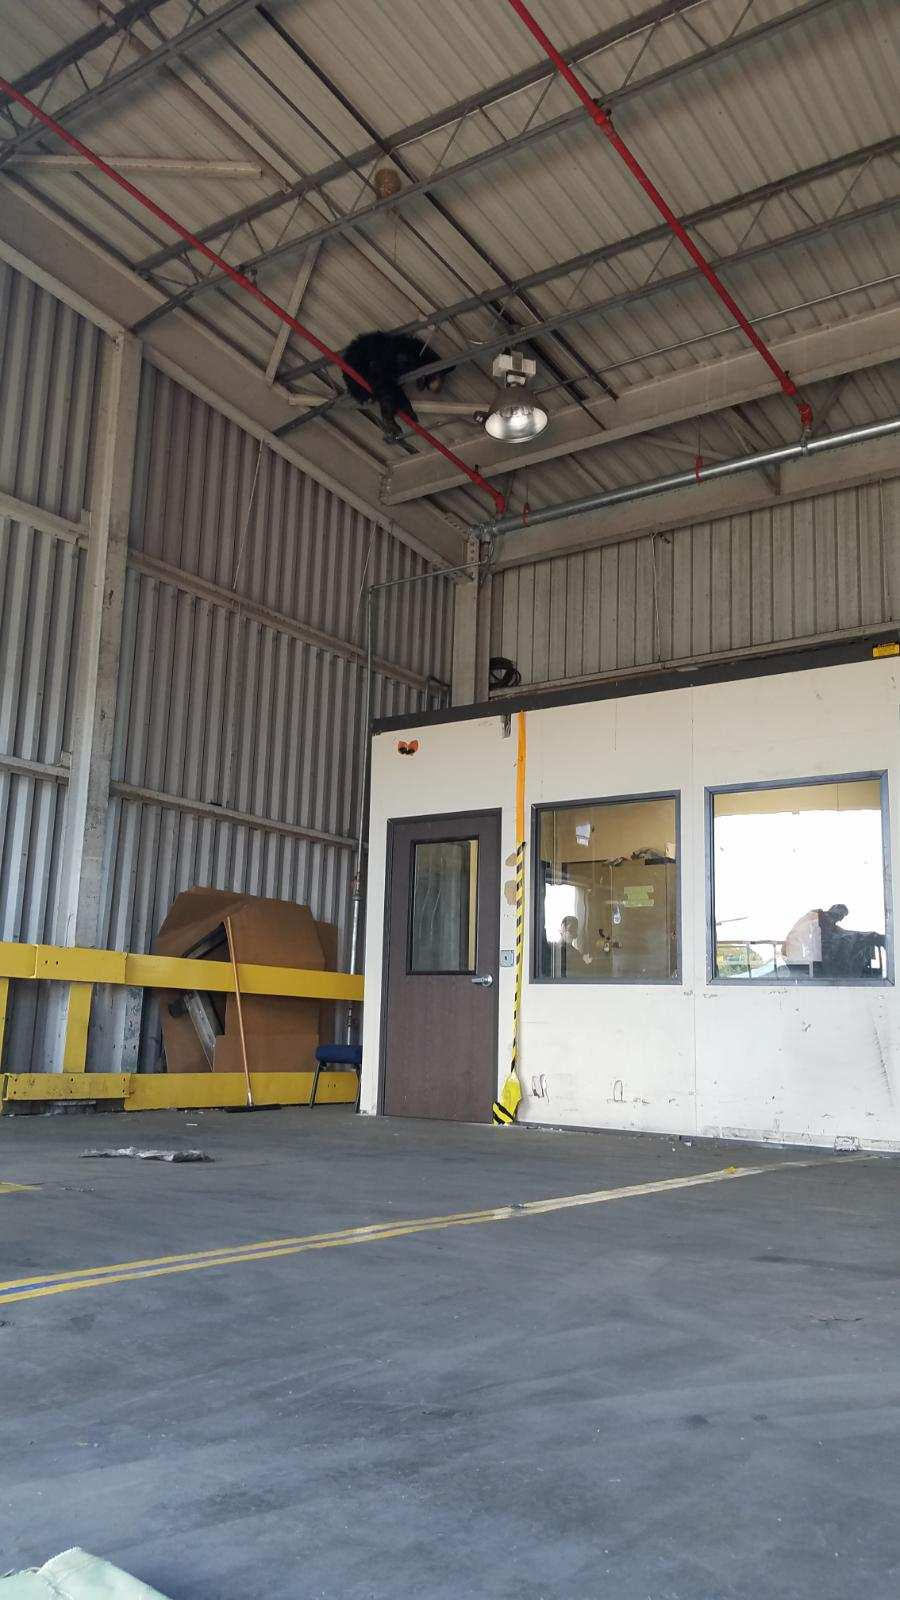 Cá sấu xâm nhập bưu điện, gấu đen mắc kẹt trên trần nhà máy ở Mỹ